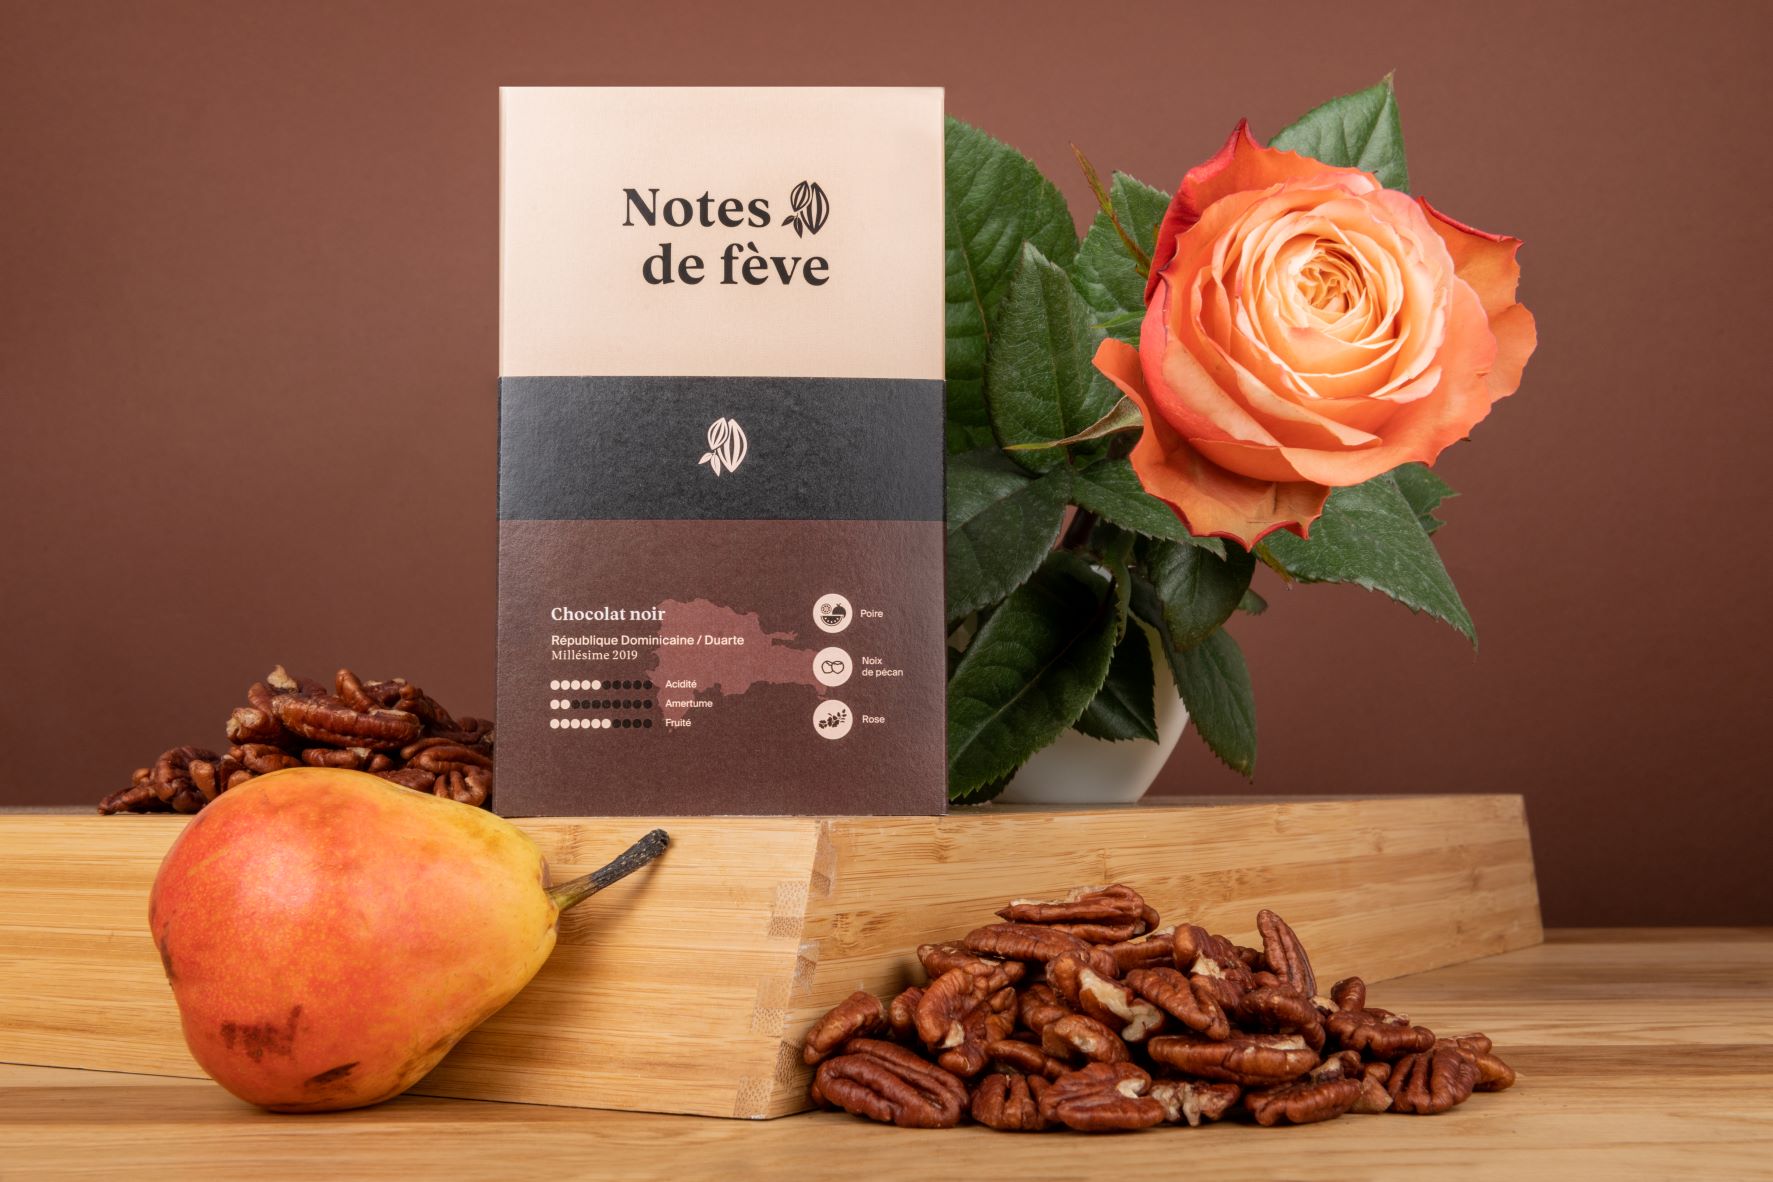 Une tablette de chocolat avec un emballage brun. Autour, on voit une rose, une poire et des noix de pécan, trois arômes que l'on retrouve naturellement dans la fève de cacao.